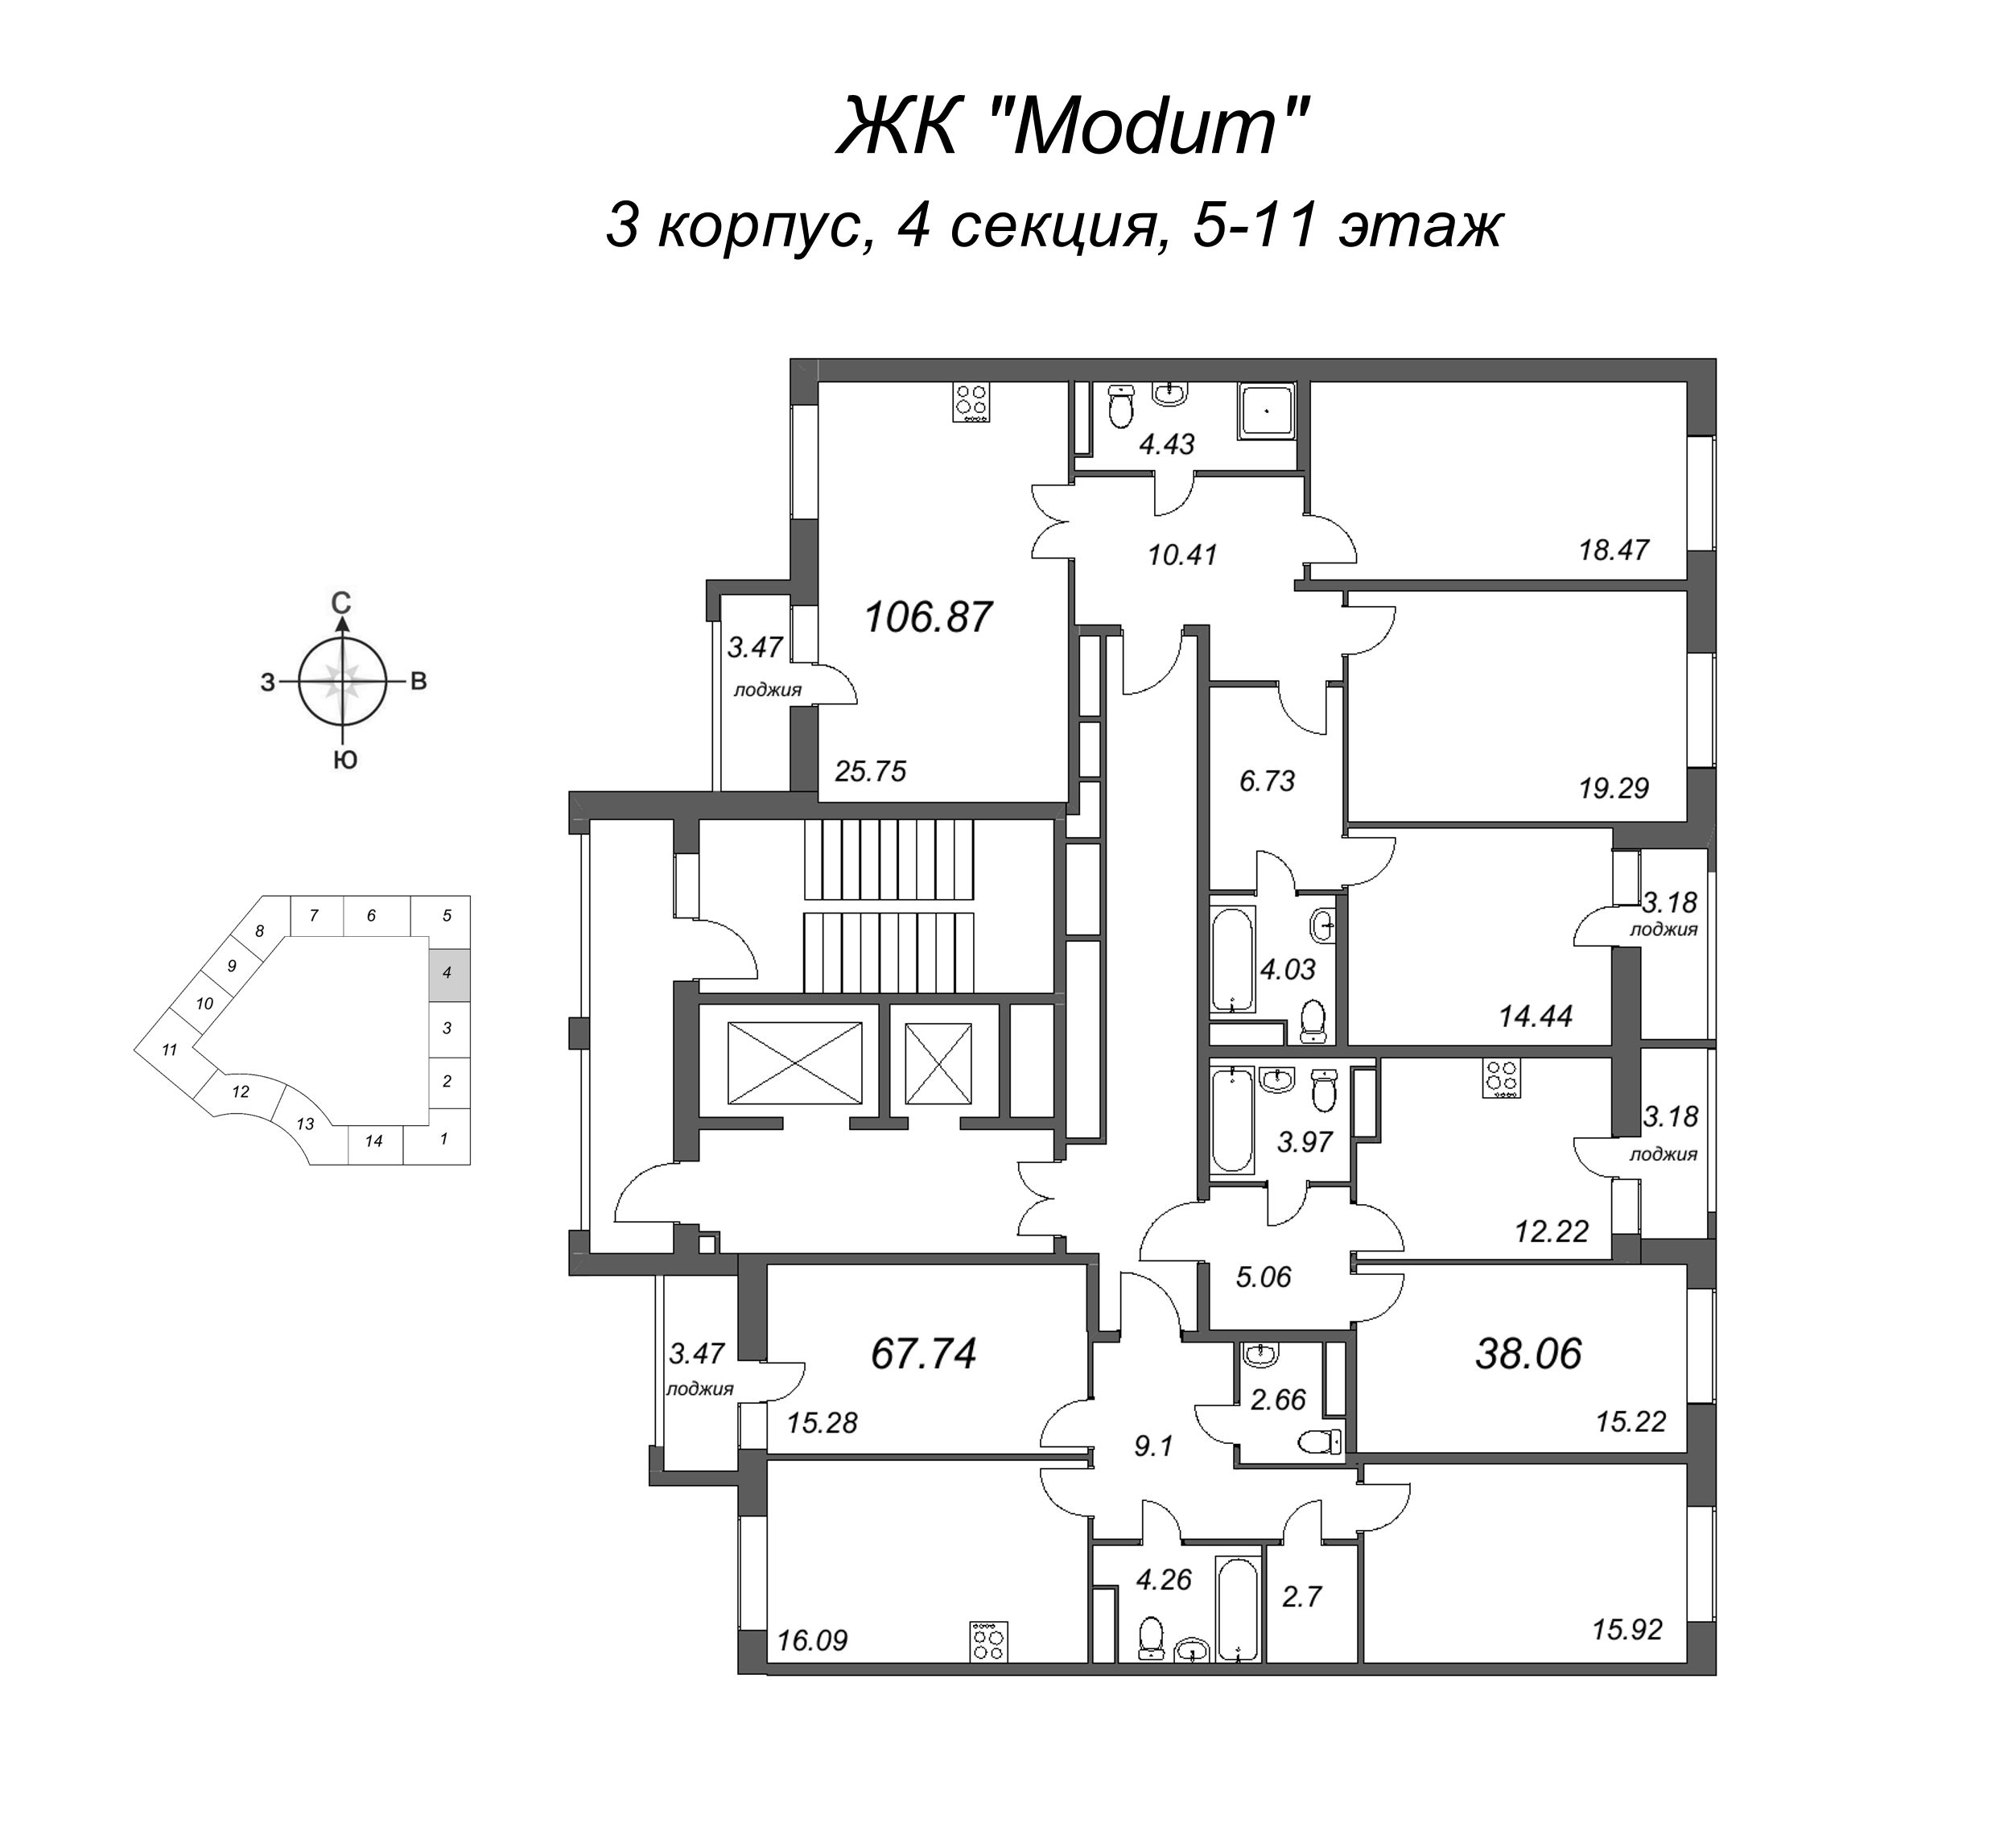 1-комнатная квартира, 38.06 м² в ЖК "Modum" - планировка этажа